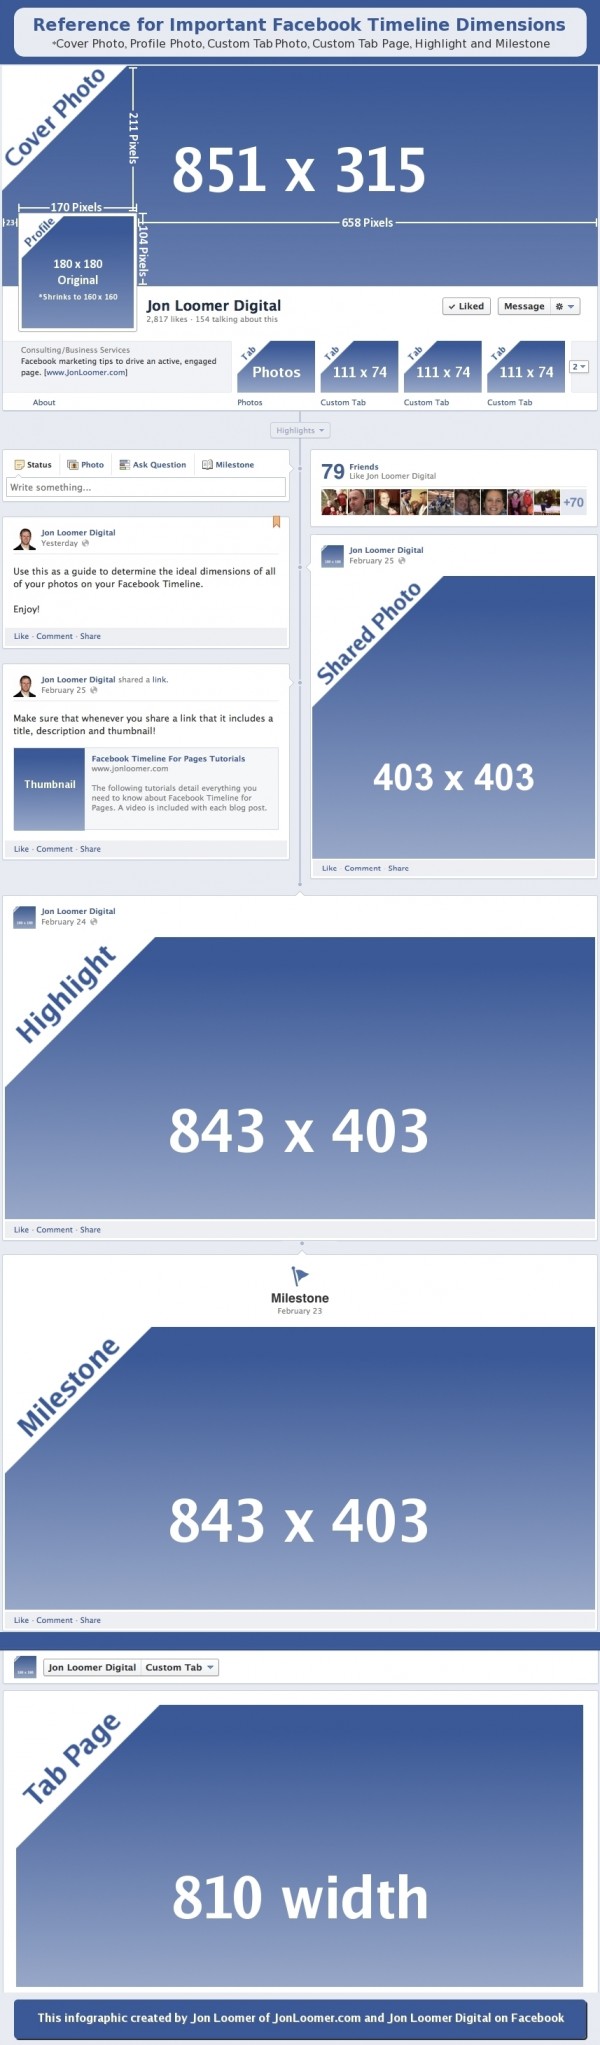 Les dimensions des images Facebook sur la Timeline 